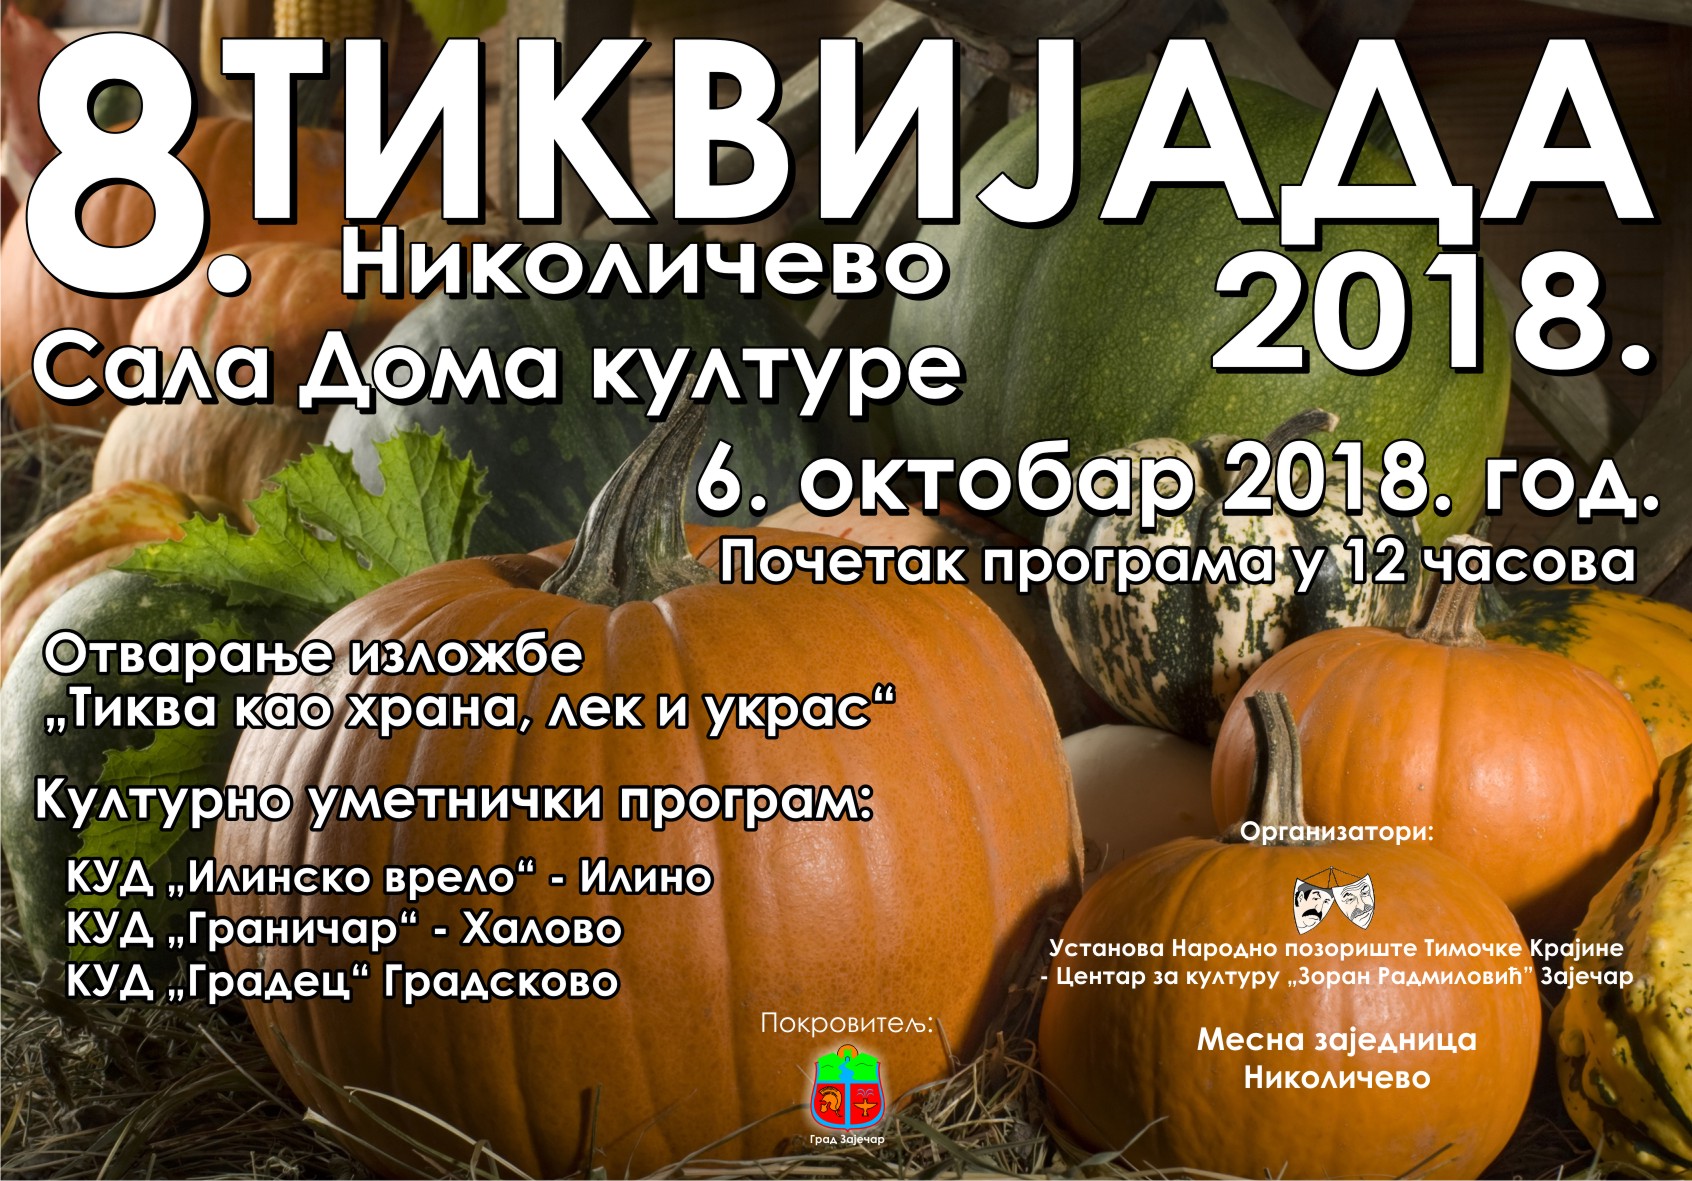 6. oktobra biće održana osma po redu „Tikvijada“ u Nikoličevu